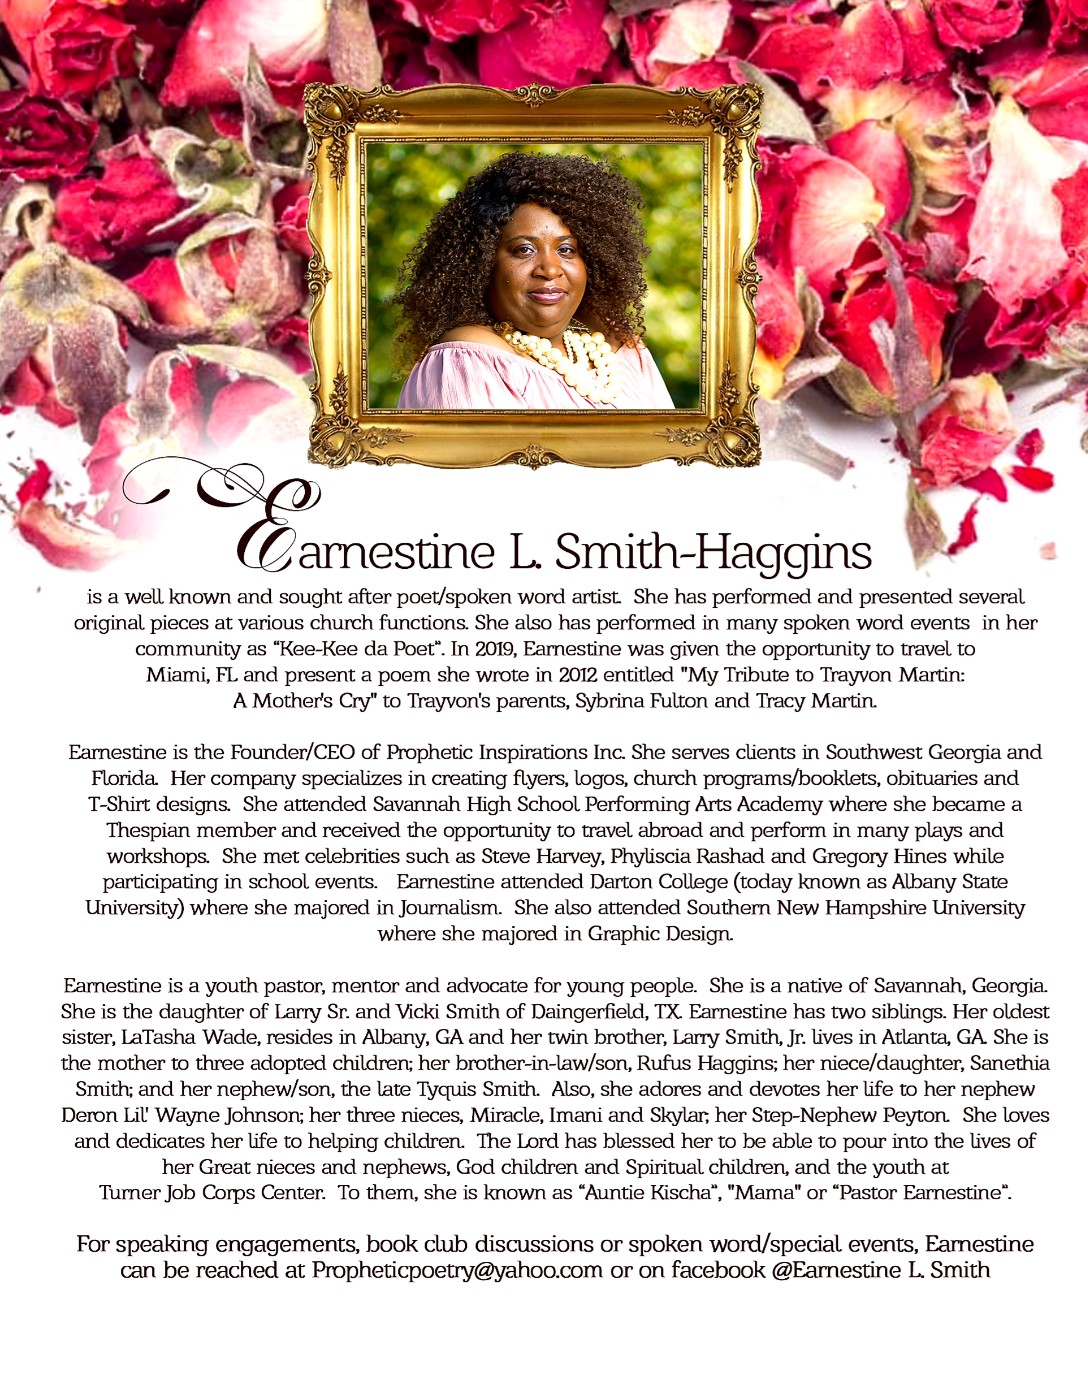 Earnestine L. Smith-Haggins